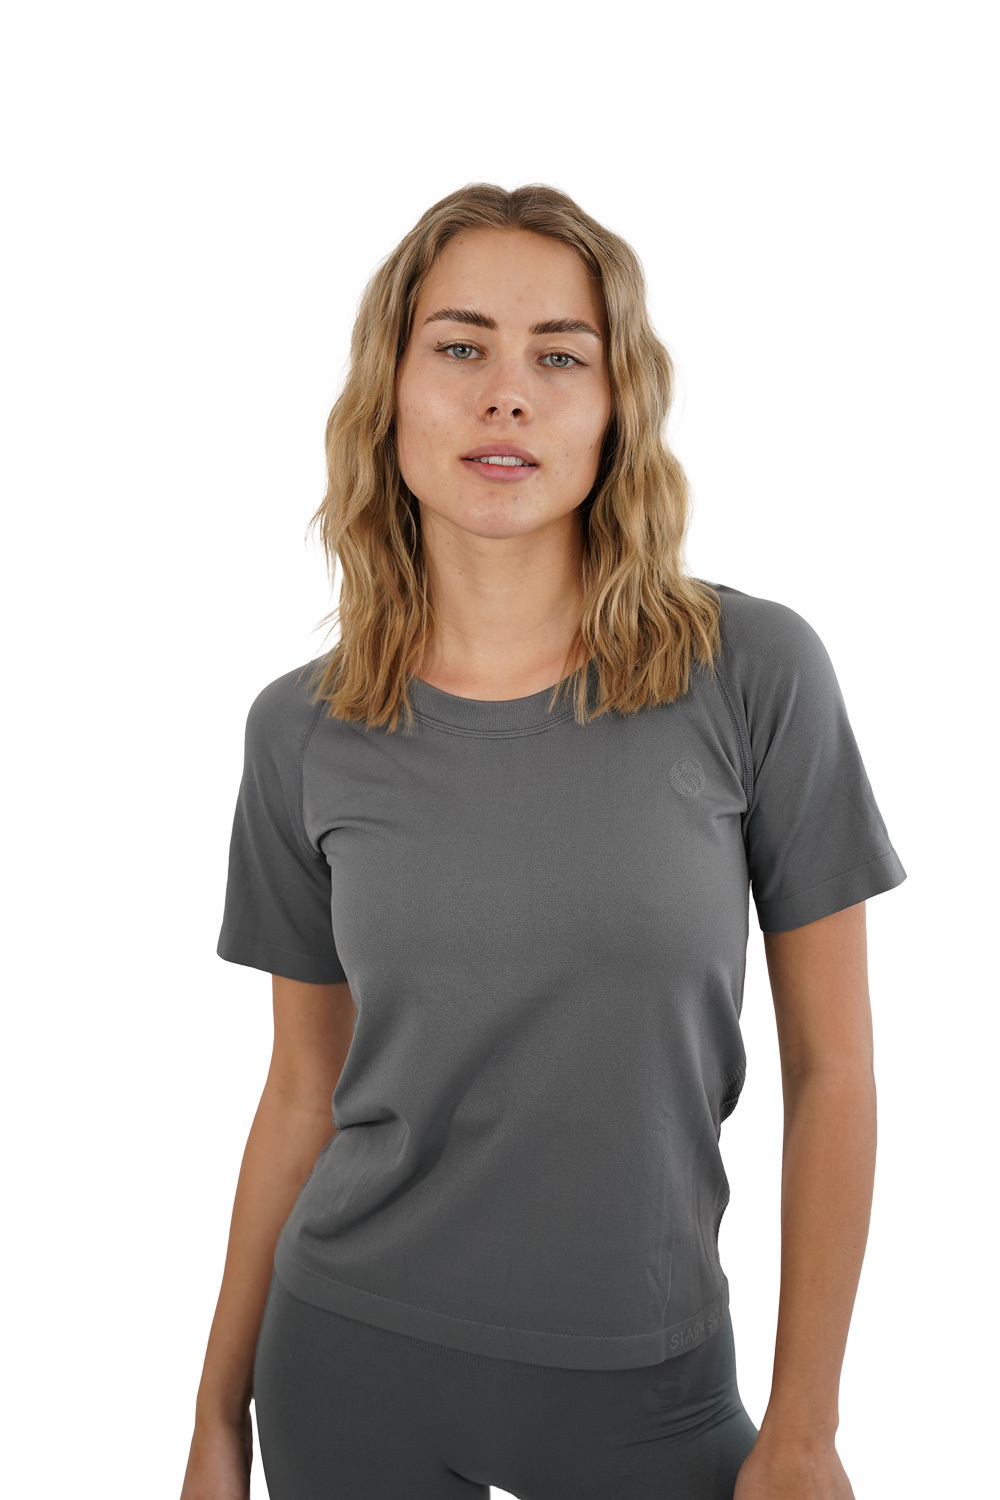 Спортивная футболка Stark Soul Sport Shirt Damen Racer Seamless Laufshirt, серый